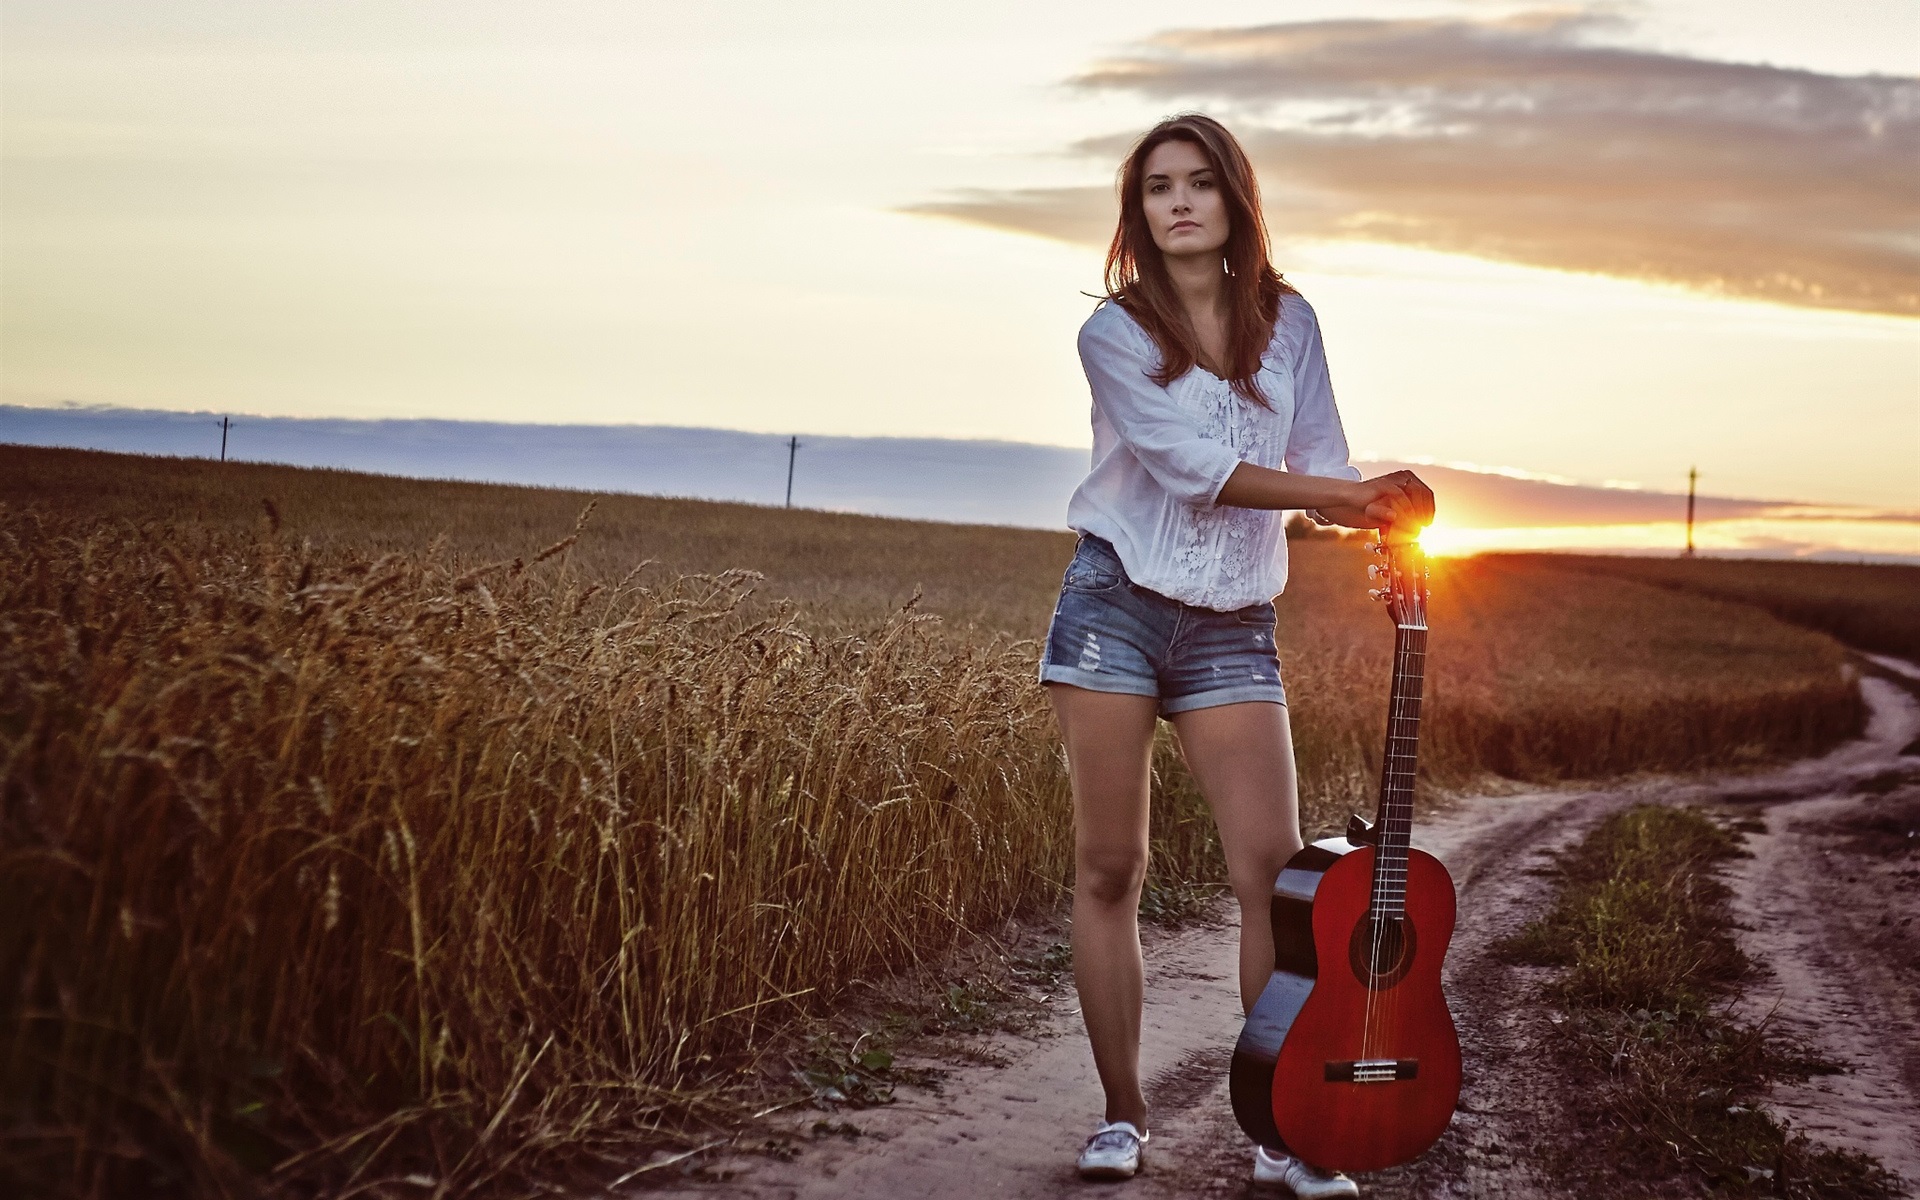 Wallpaper Long Hair Girl, Guitar, Sunset, Fields - Girl With Guitar Background - HD Wallpaper 